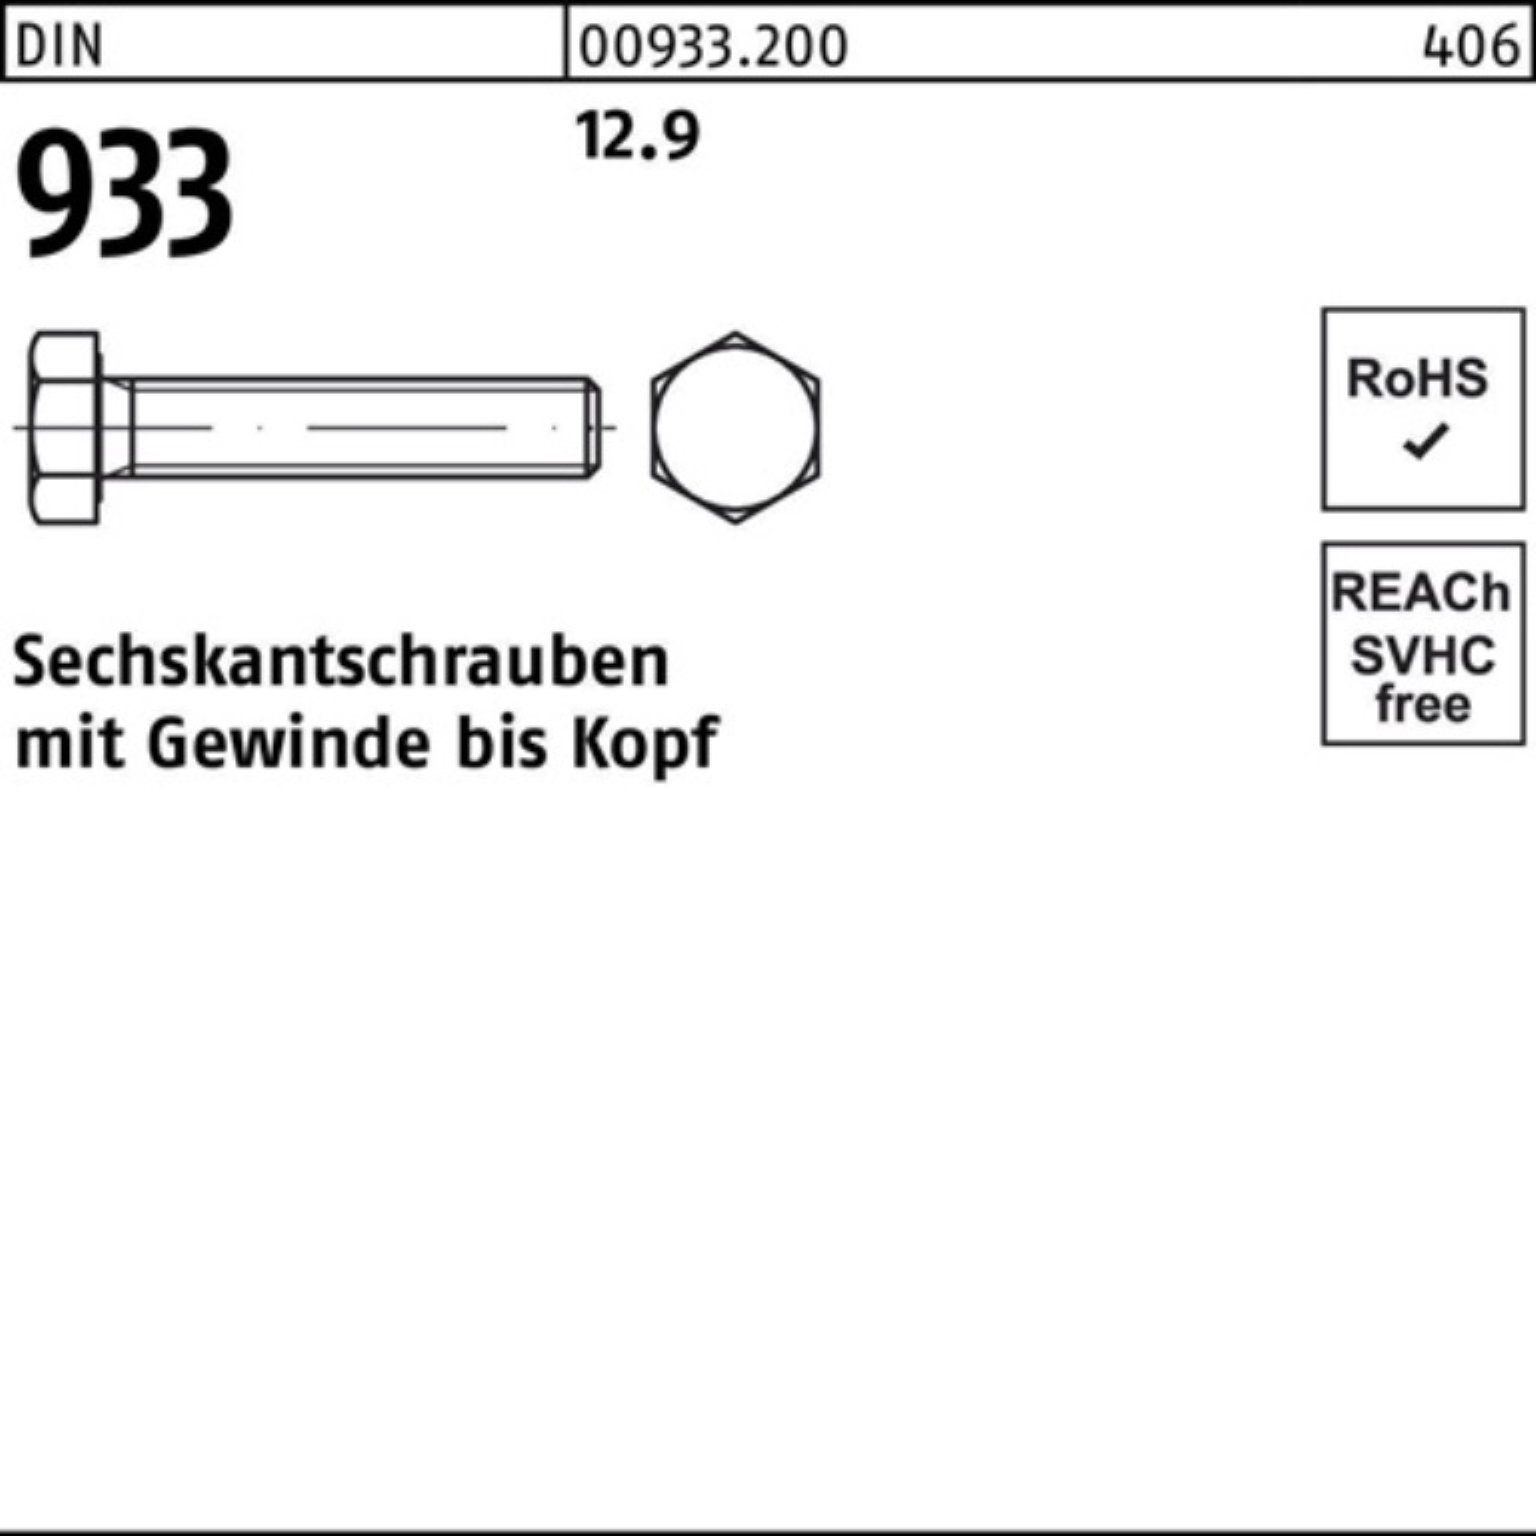 Reyher Sechskantschraube Sechskantschraube M20x 50 12.9 933 DIN Pack 25 100er 933 VG Stück DIN